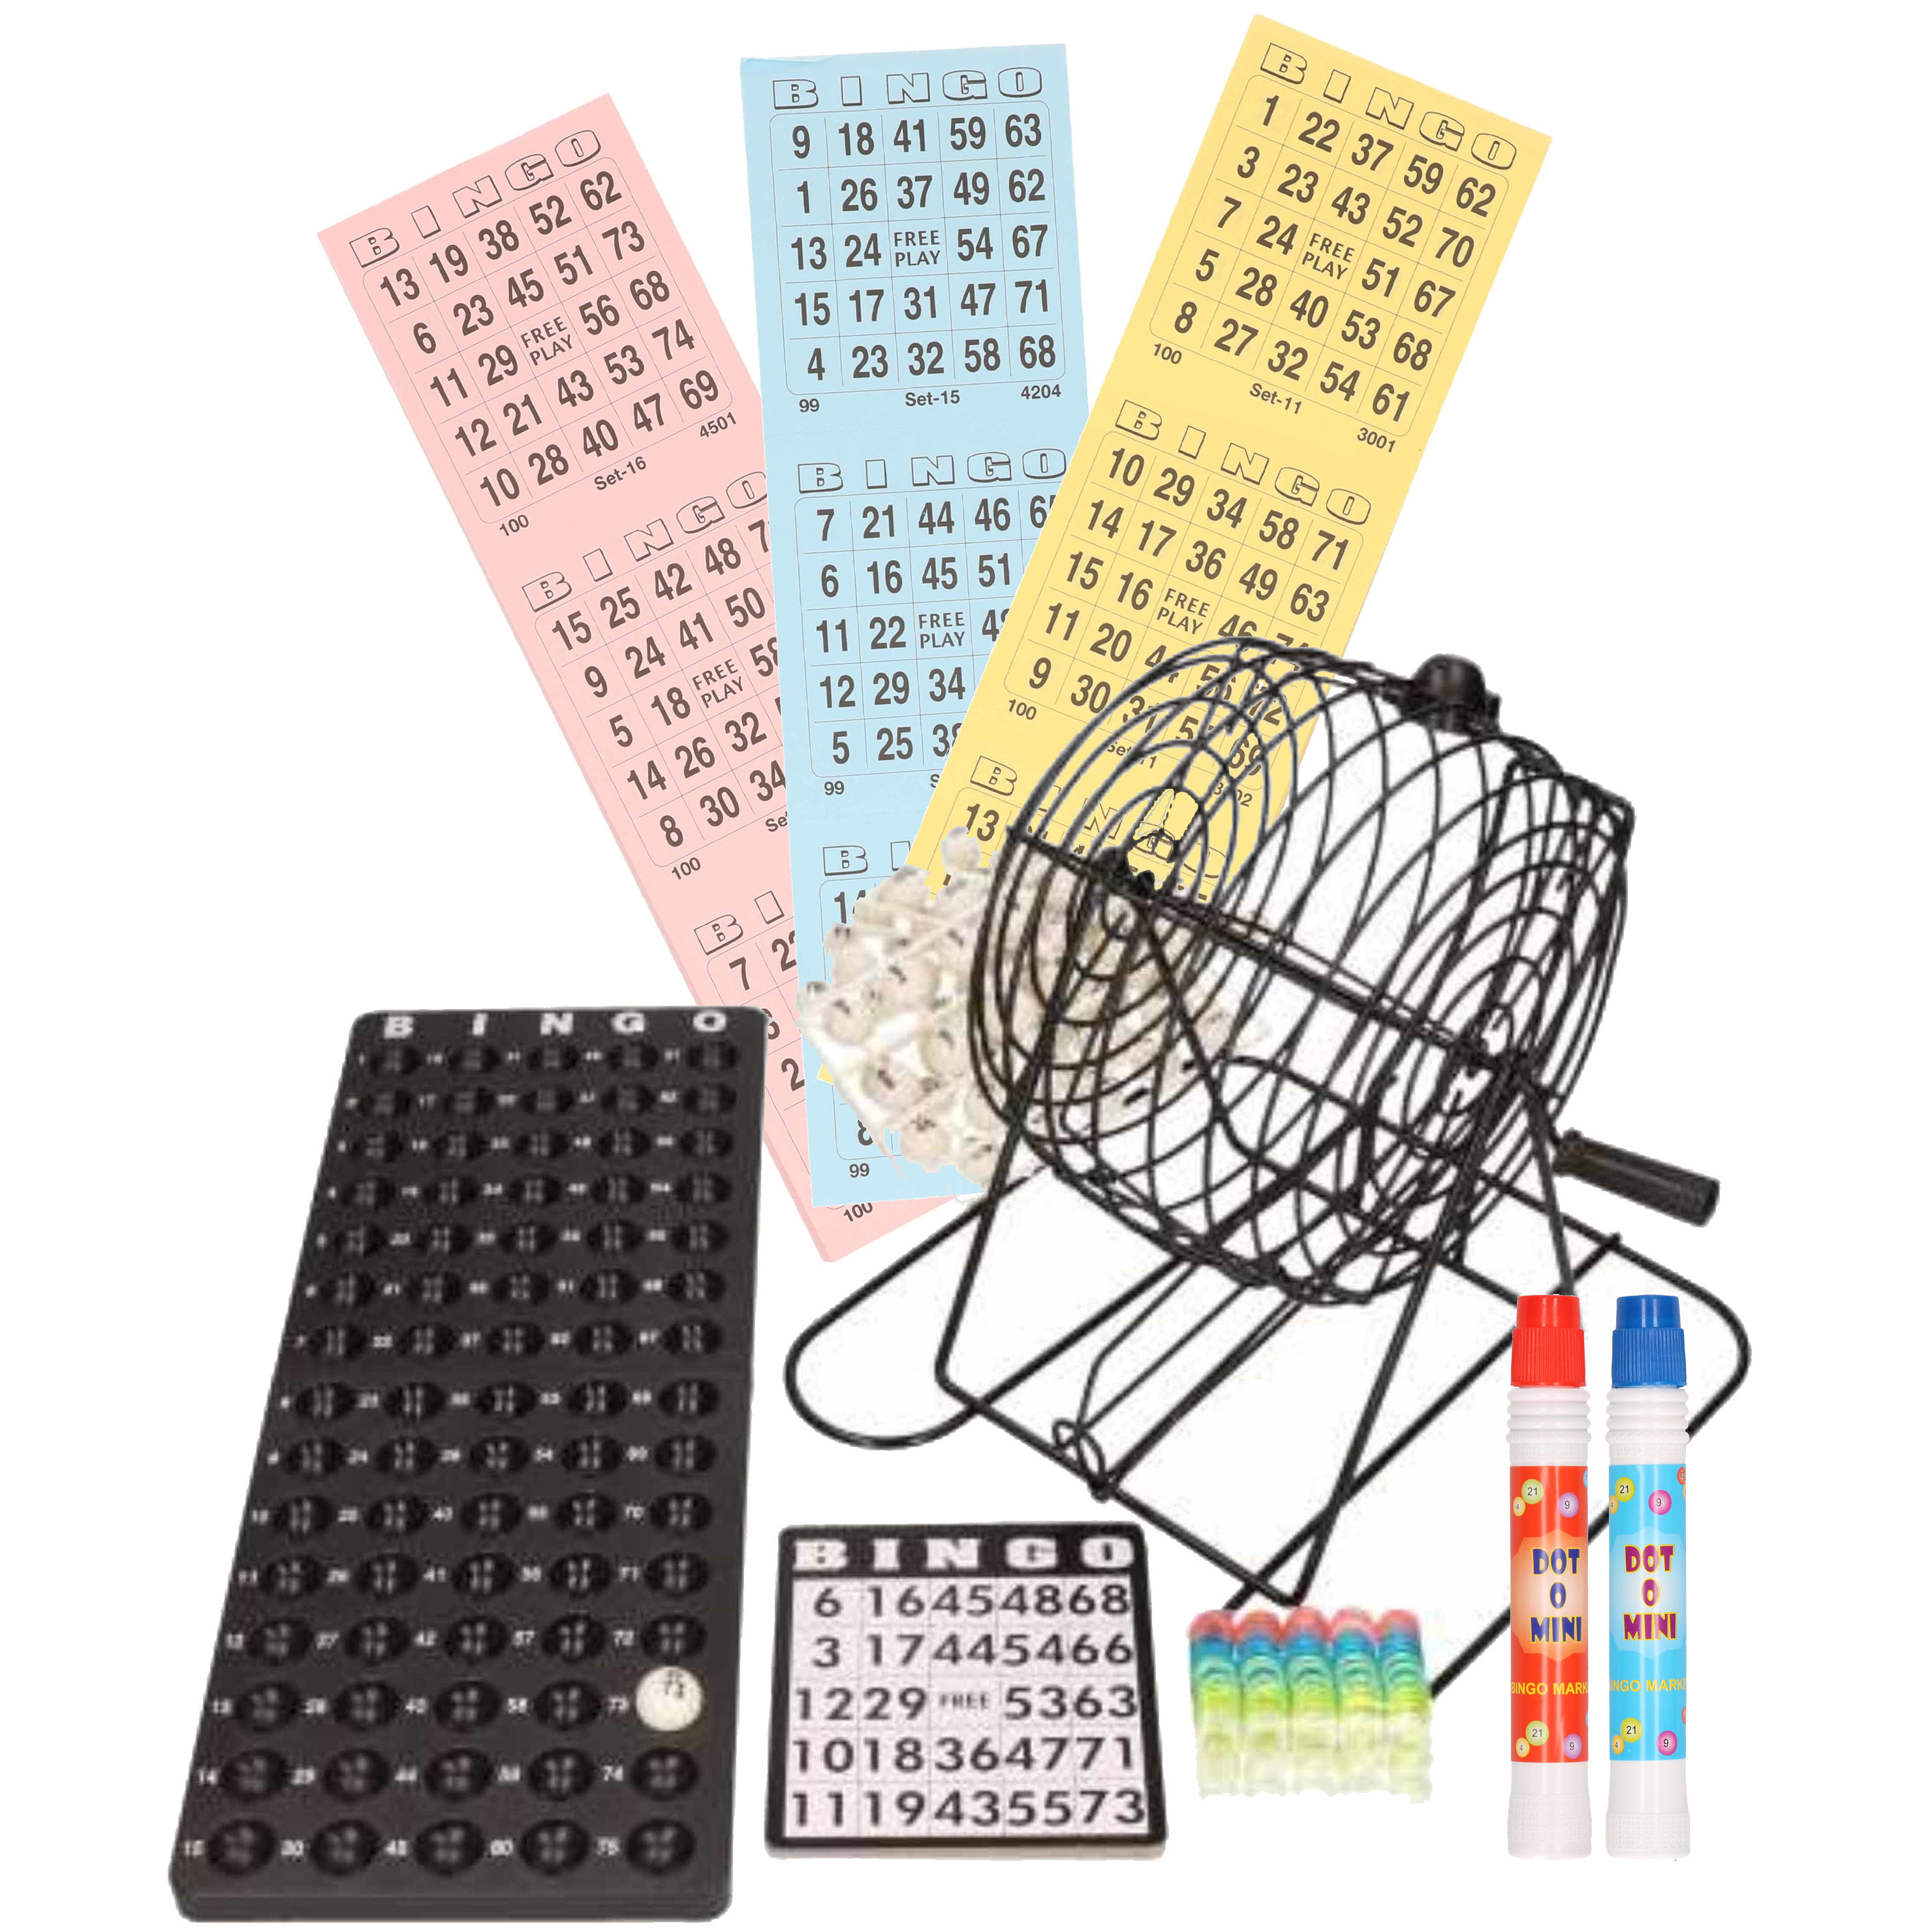 Bingo spel zwart/wit complete set 29 cm nummers 1-75 met molen/168x bingokaarten/2x stiften